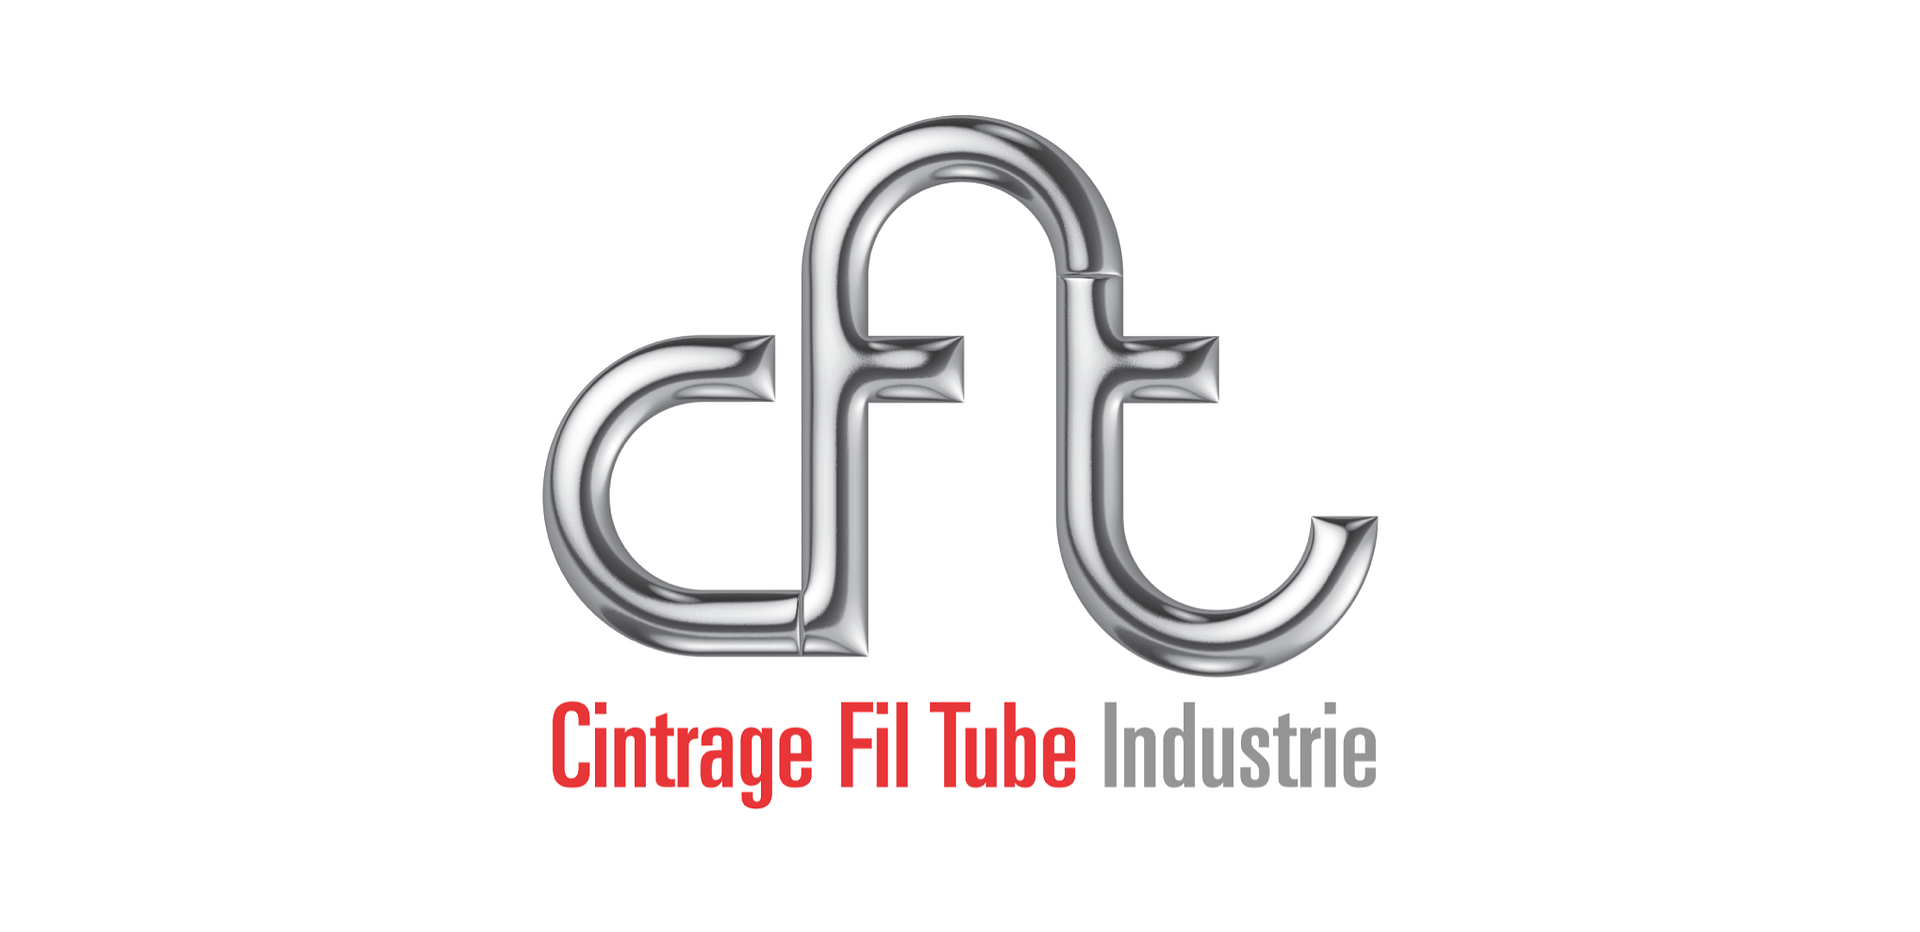 CFT Industrie : Cintrage, fil, tube.